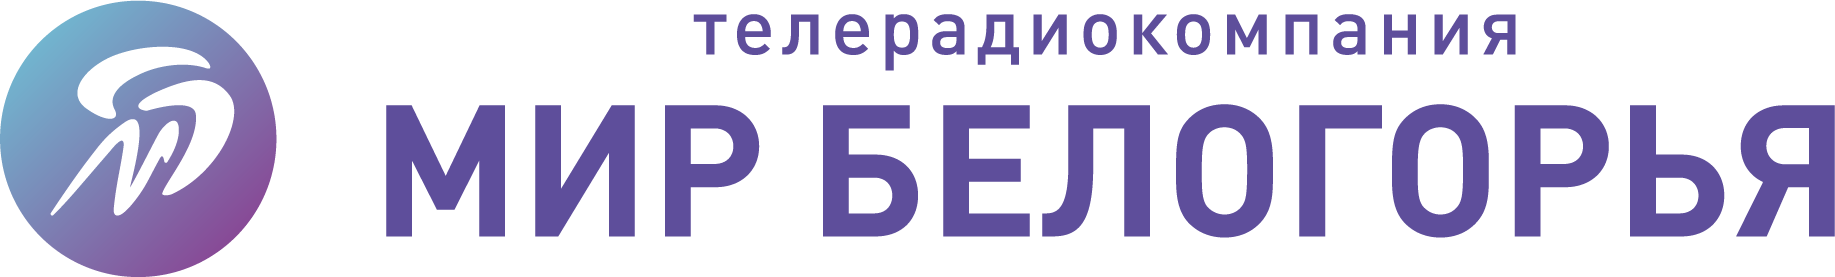 Мир Белогорья (720p) [Geo-blocked]